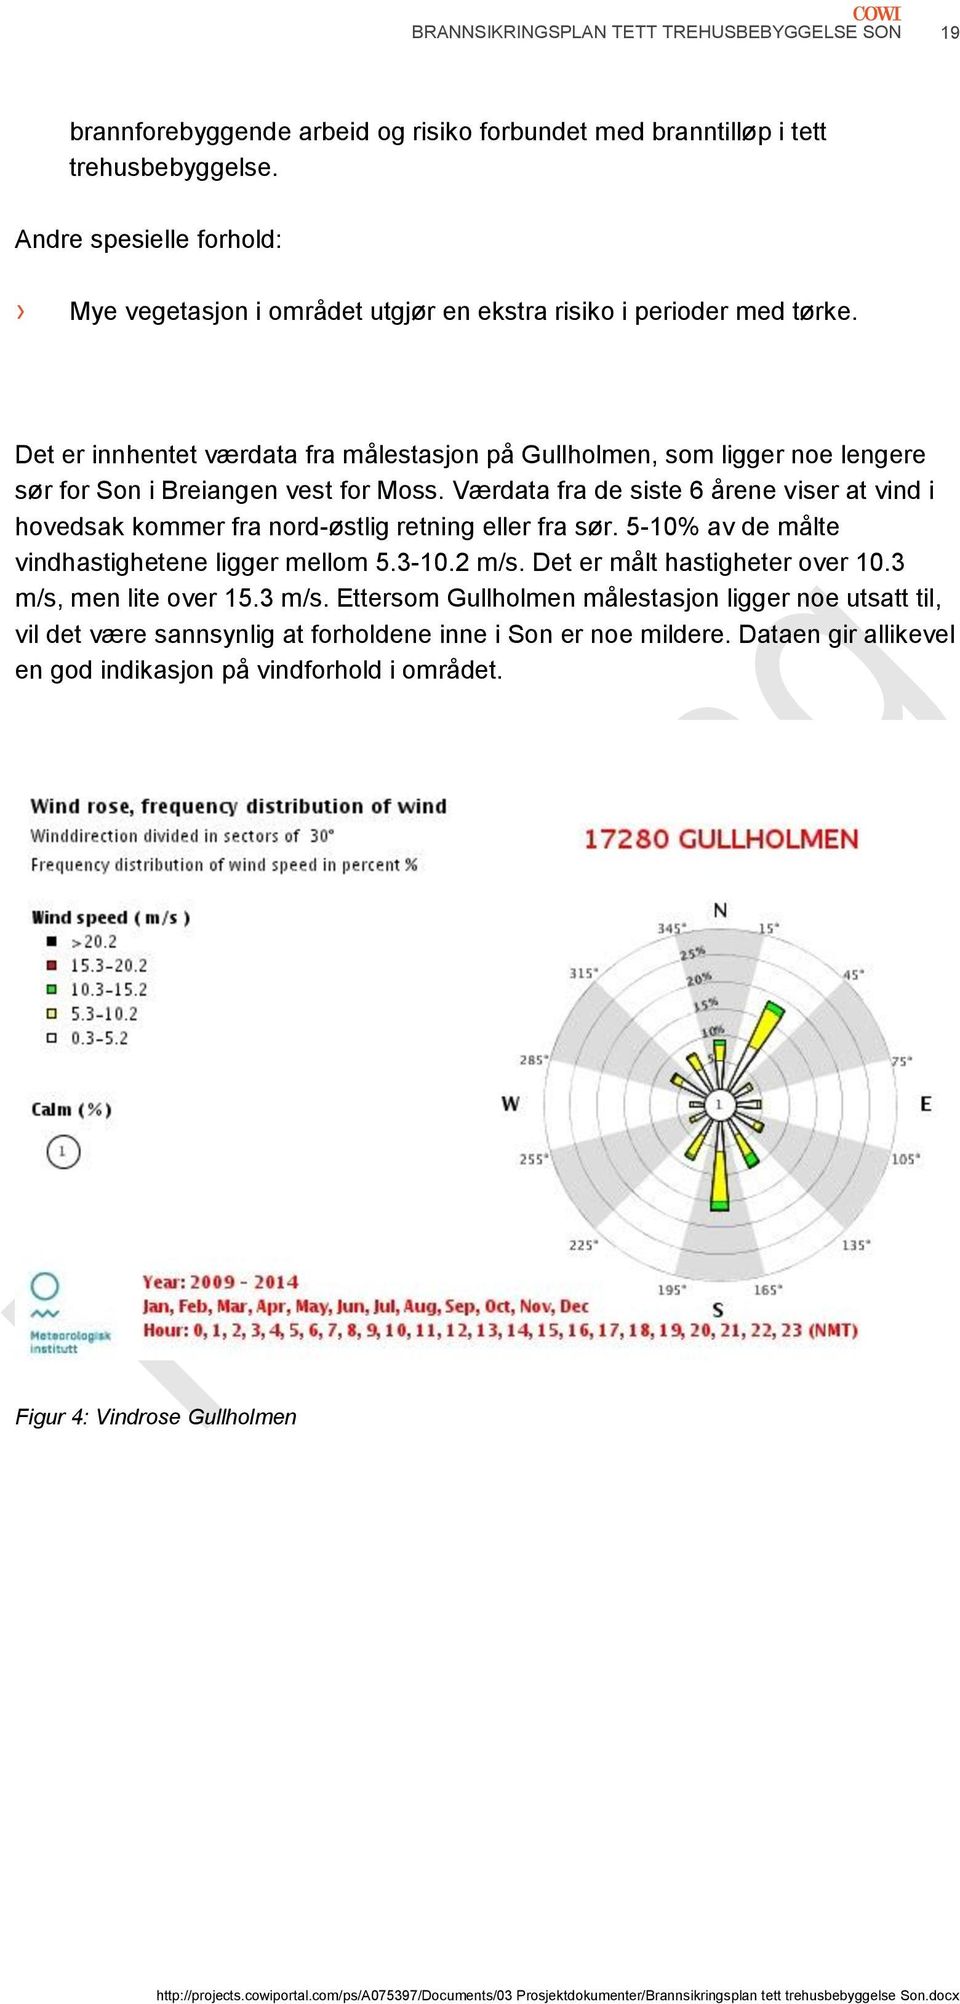 Det er innhentet værdata fra målestasjon på Gullholmen, som ligger noe lengere sør for Son i Breiangen vest for Moss.